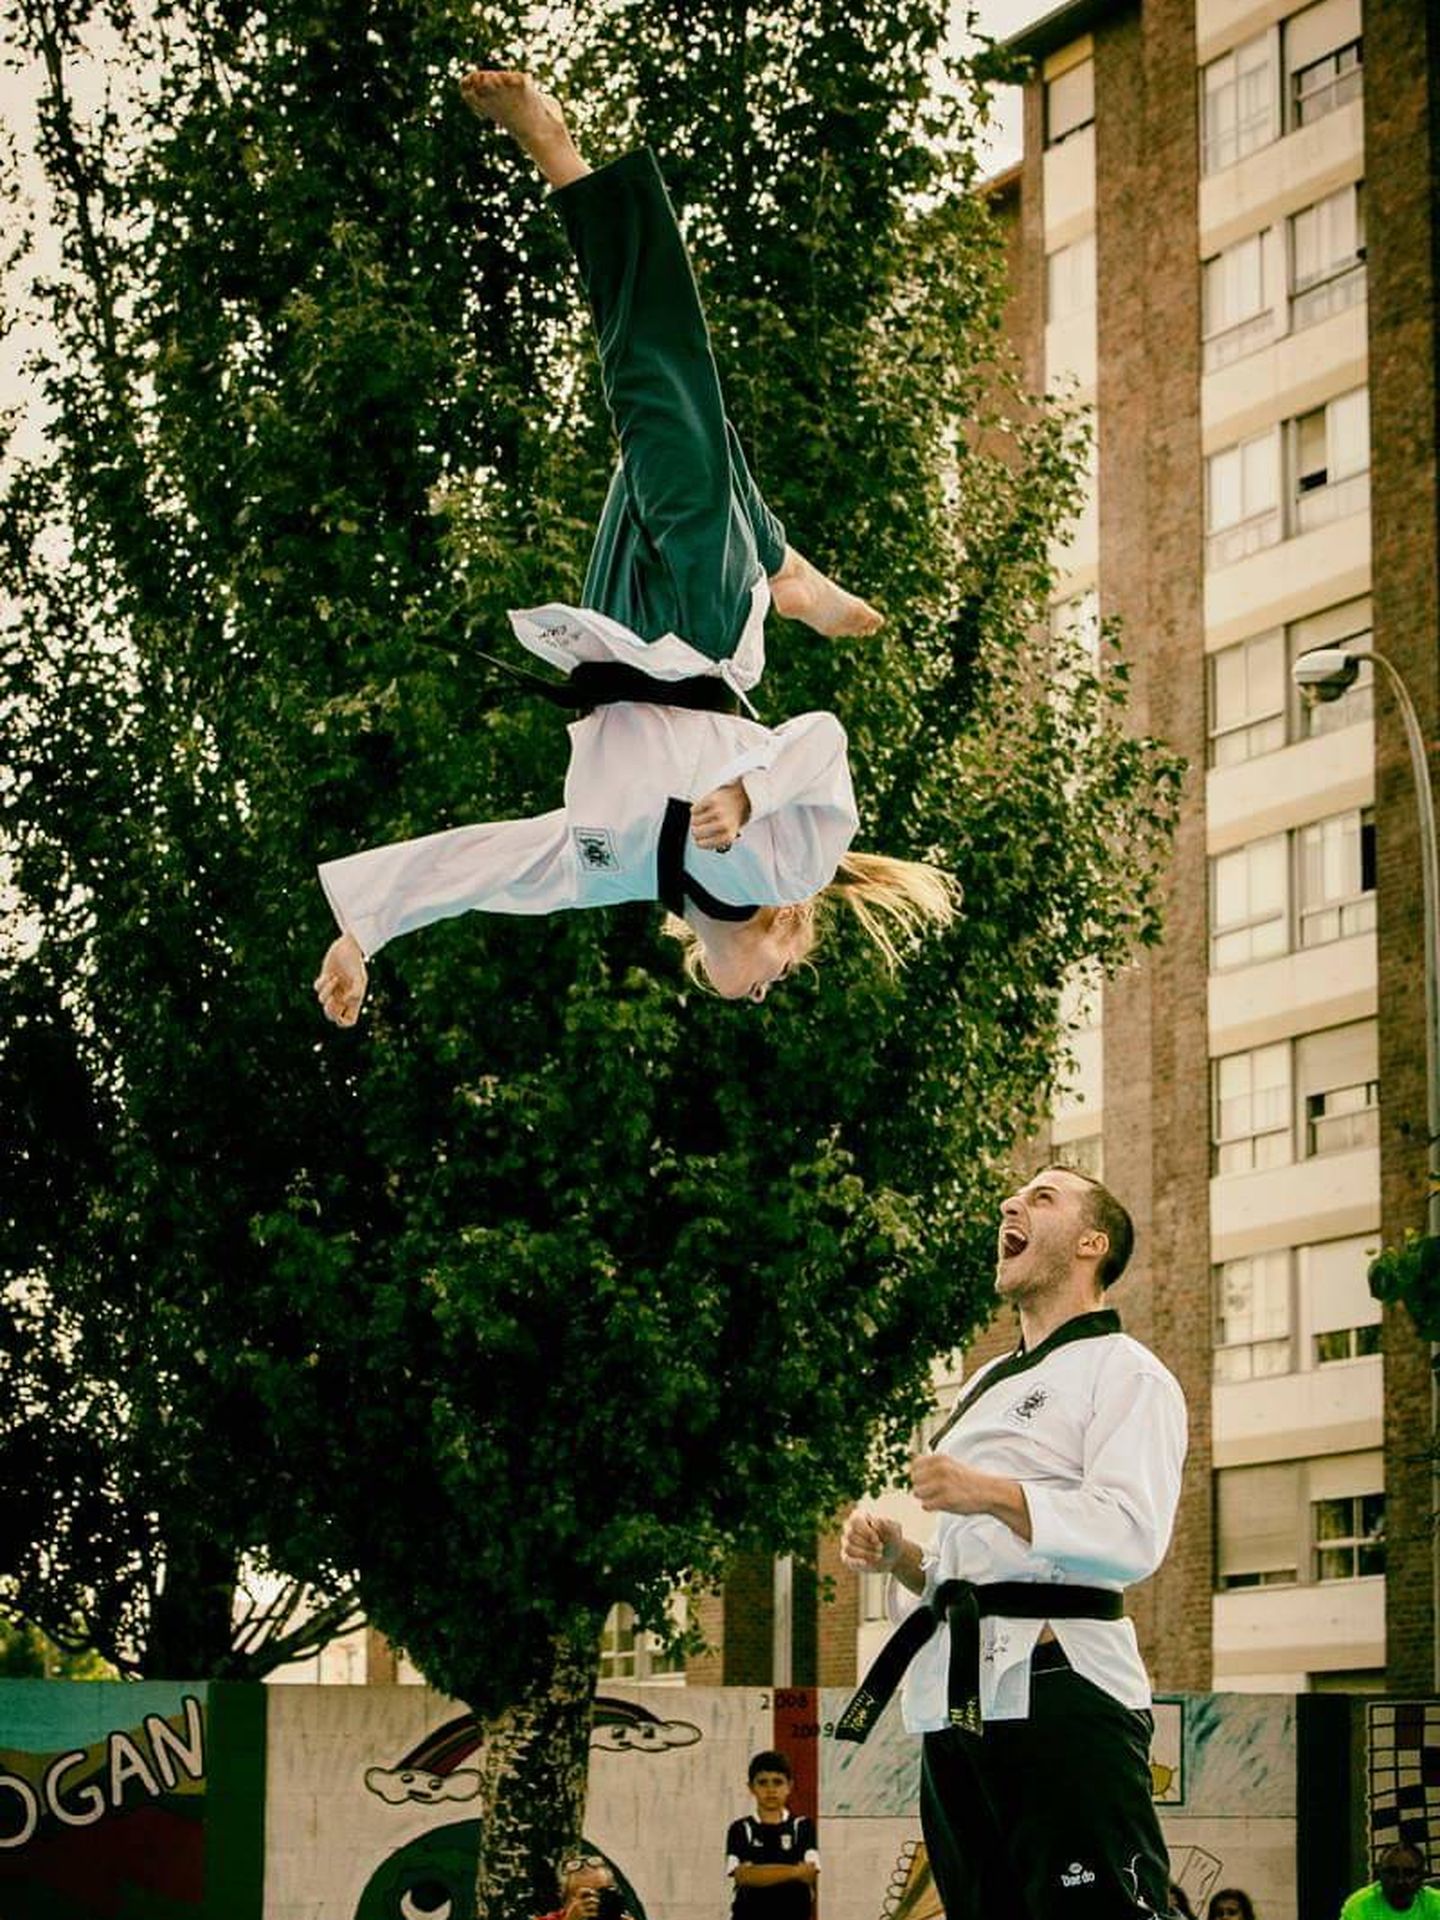 Los taekwondistas Eirim Vaamonde y Aitor Priego en un ejercicio. (Foto: Yidam)